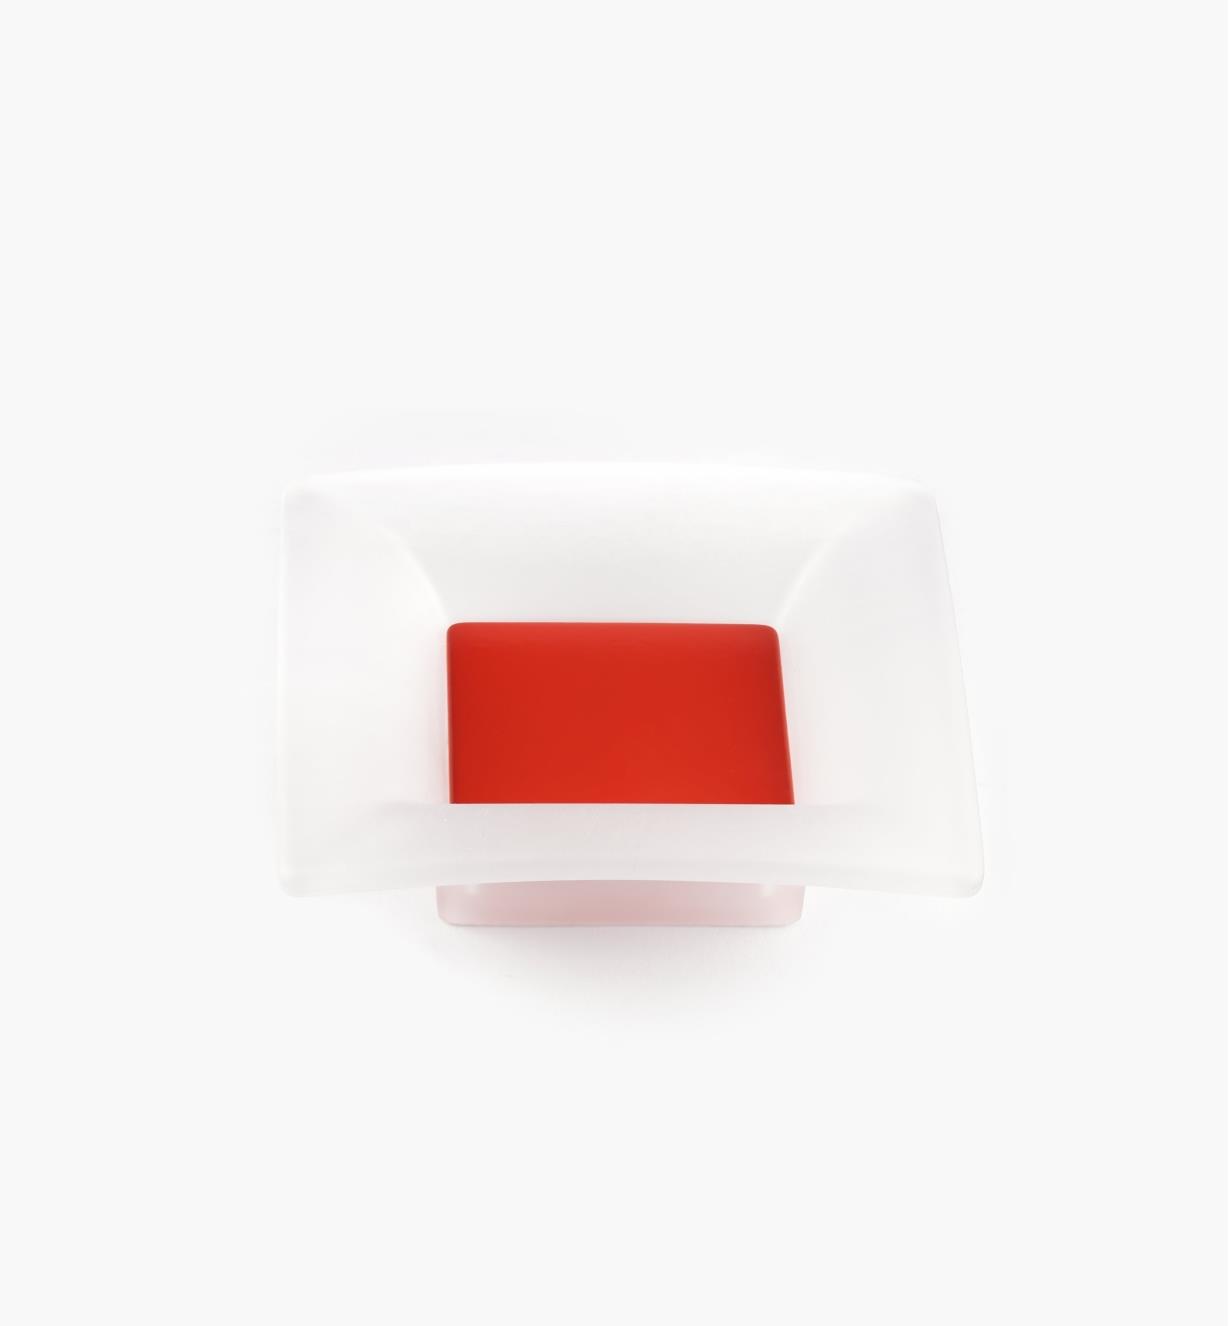 00W5432 - Poignée carrée, 32 mm, série Bungee, rouge